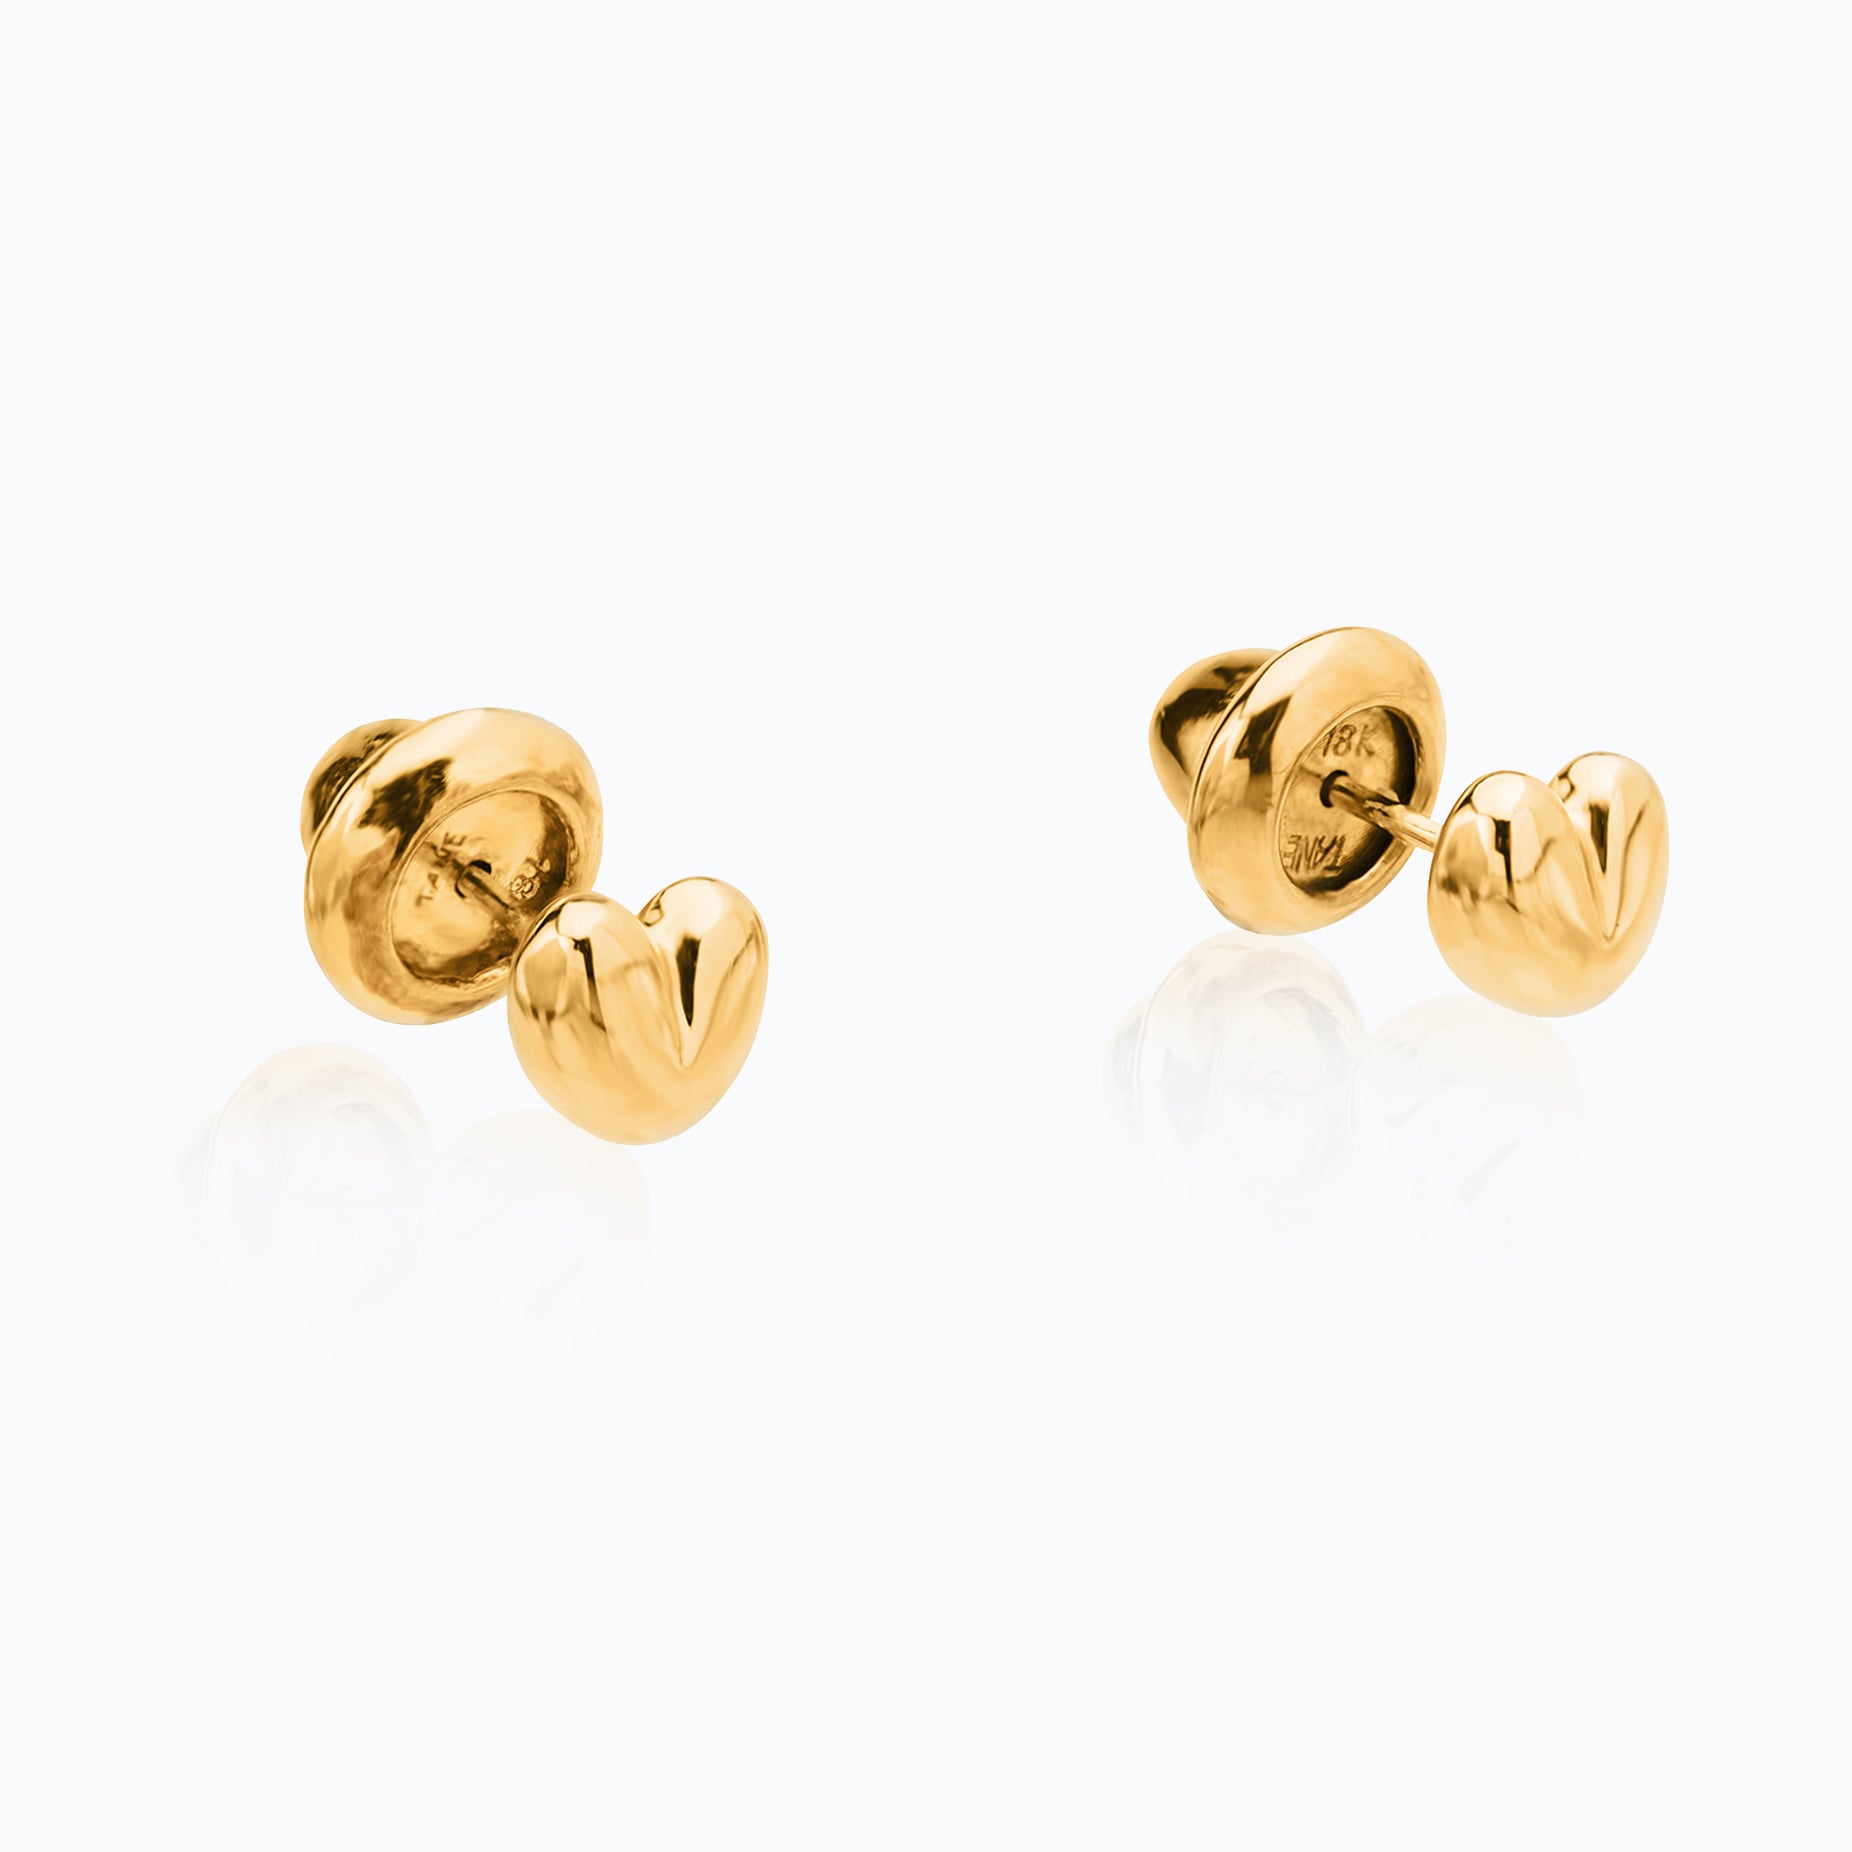 XILO GOLD EARRINGS